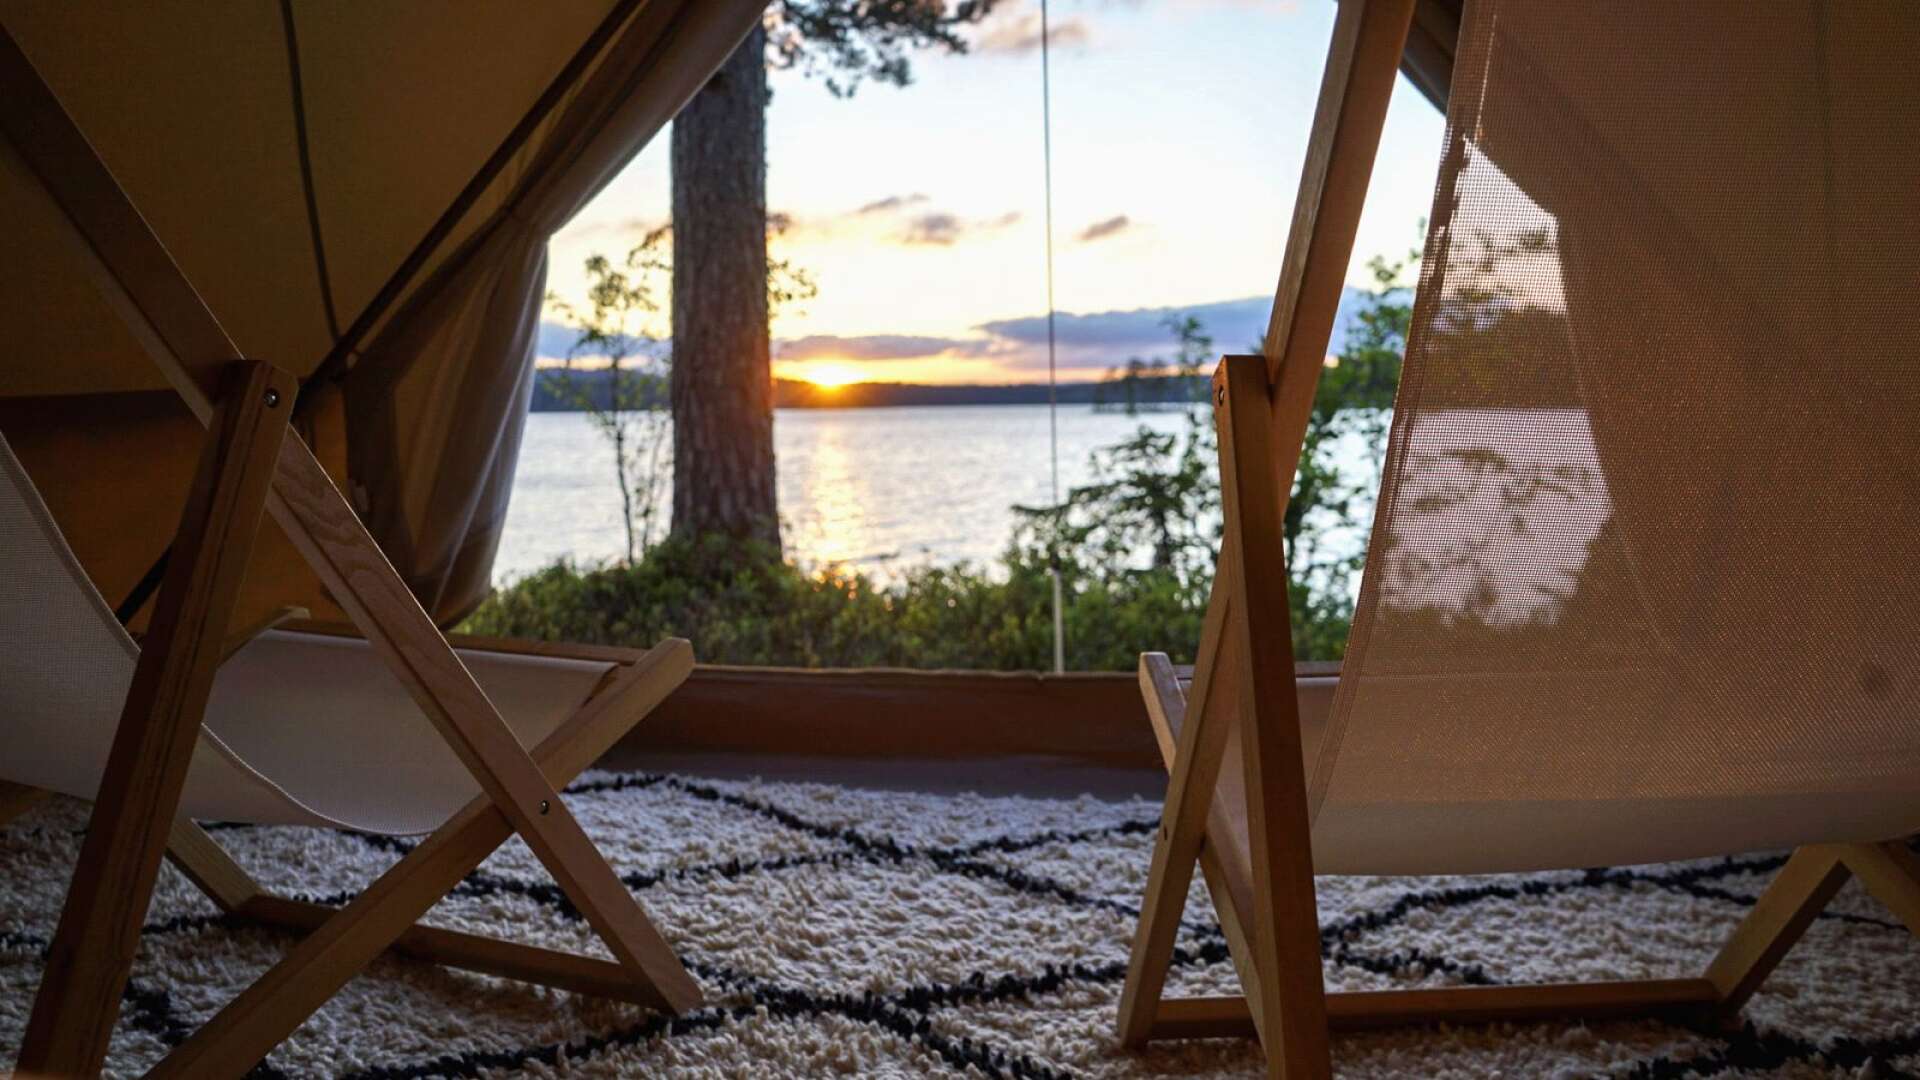 På två platser i Värmlands skogar finns färdiginredda tält uppställda. De låter sina besökare komma bort från stressen i städerna för att i stället njuta av naturen.